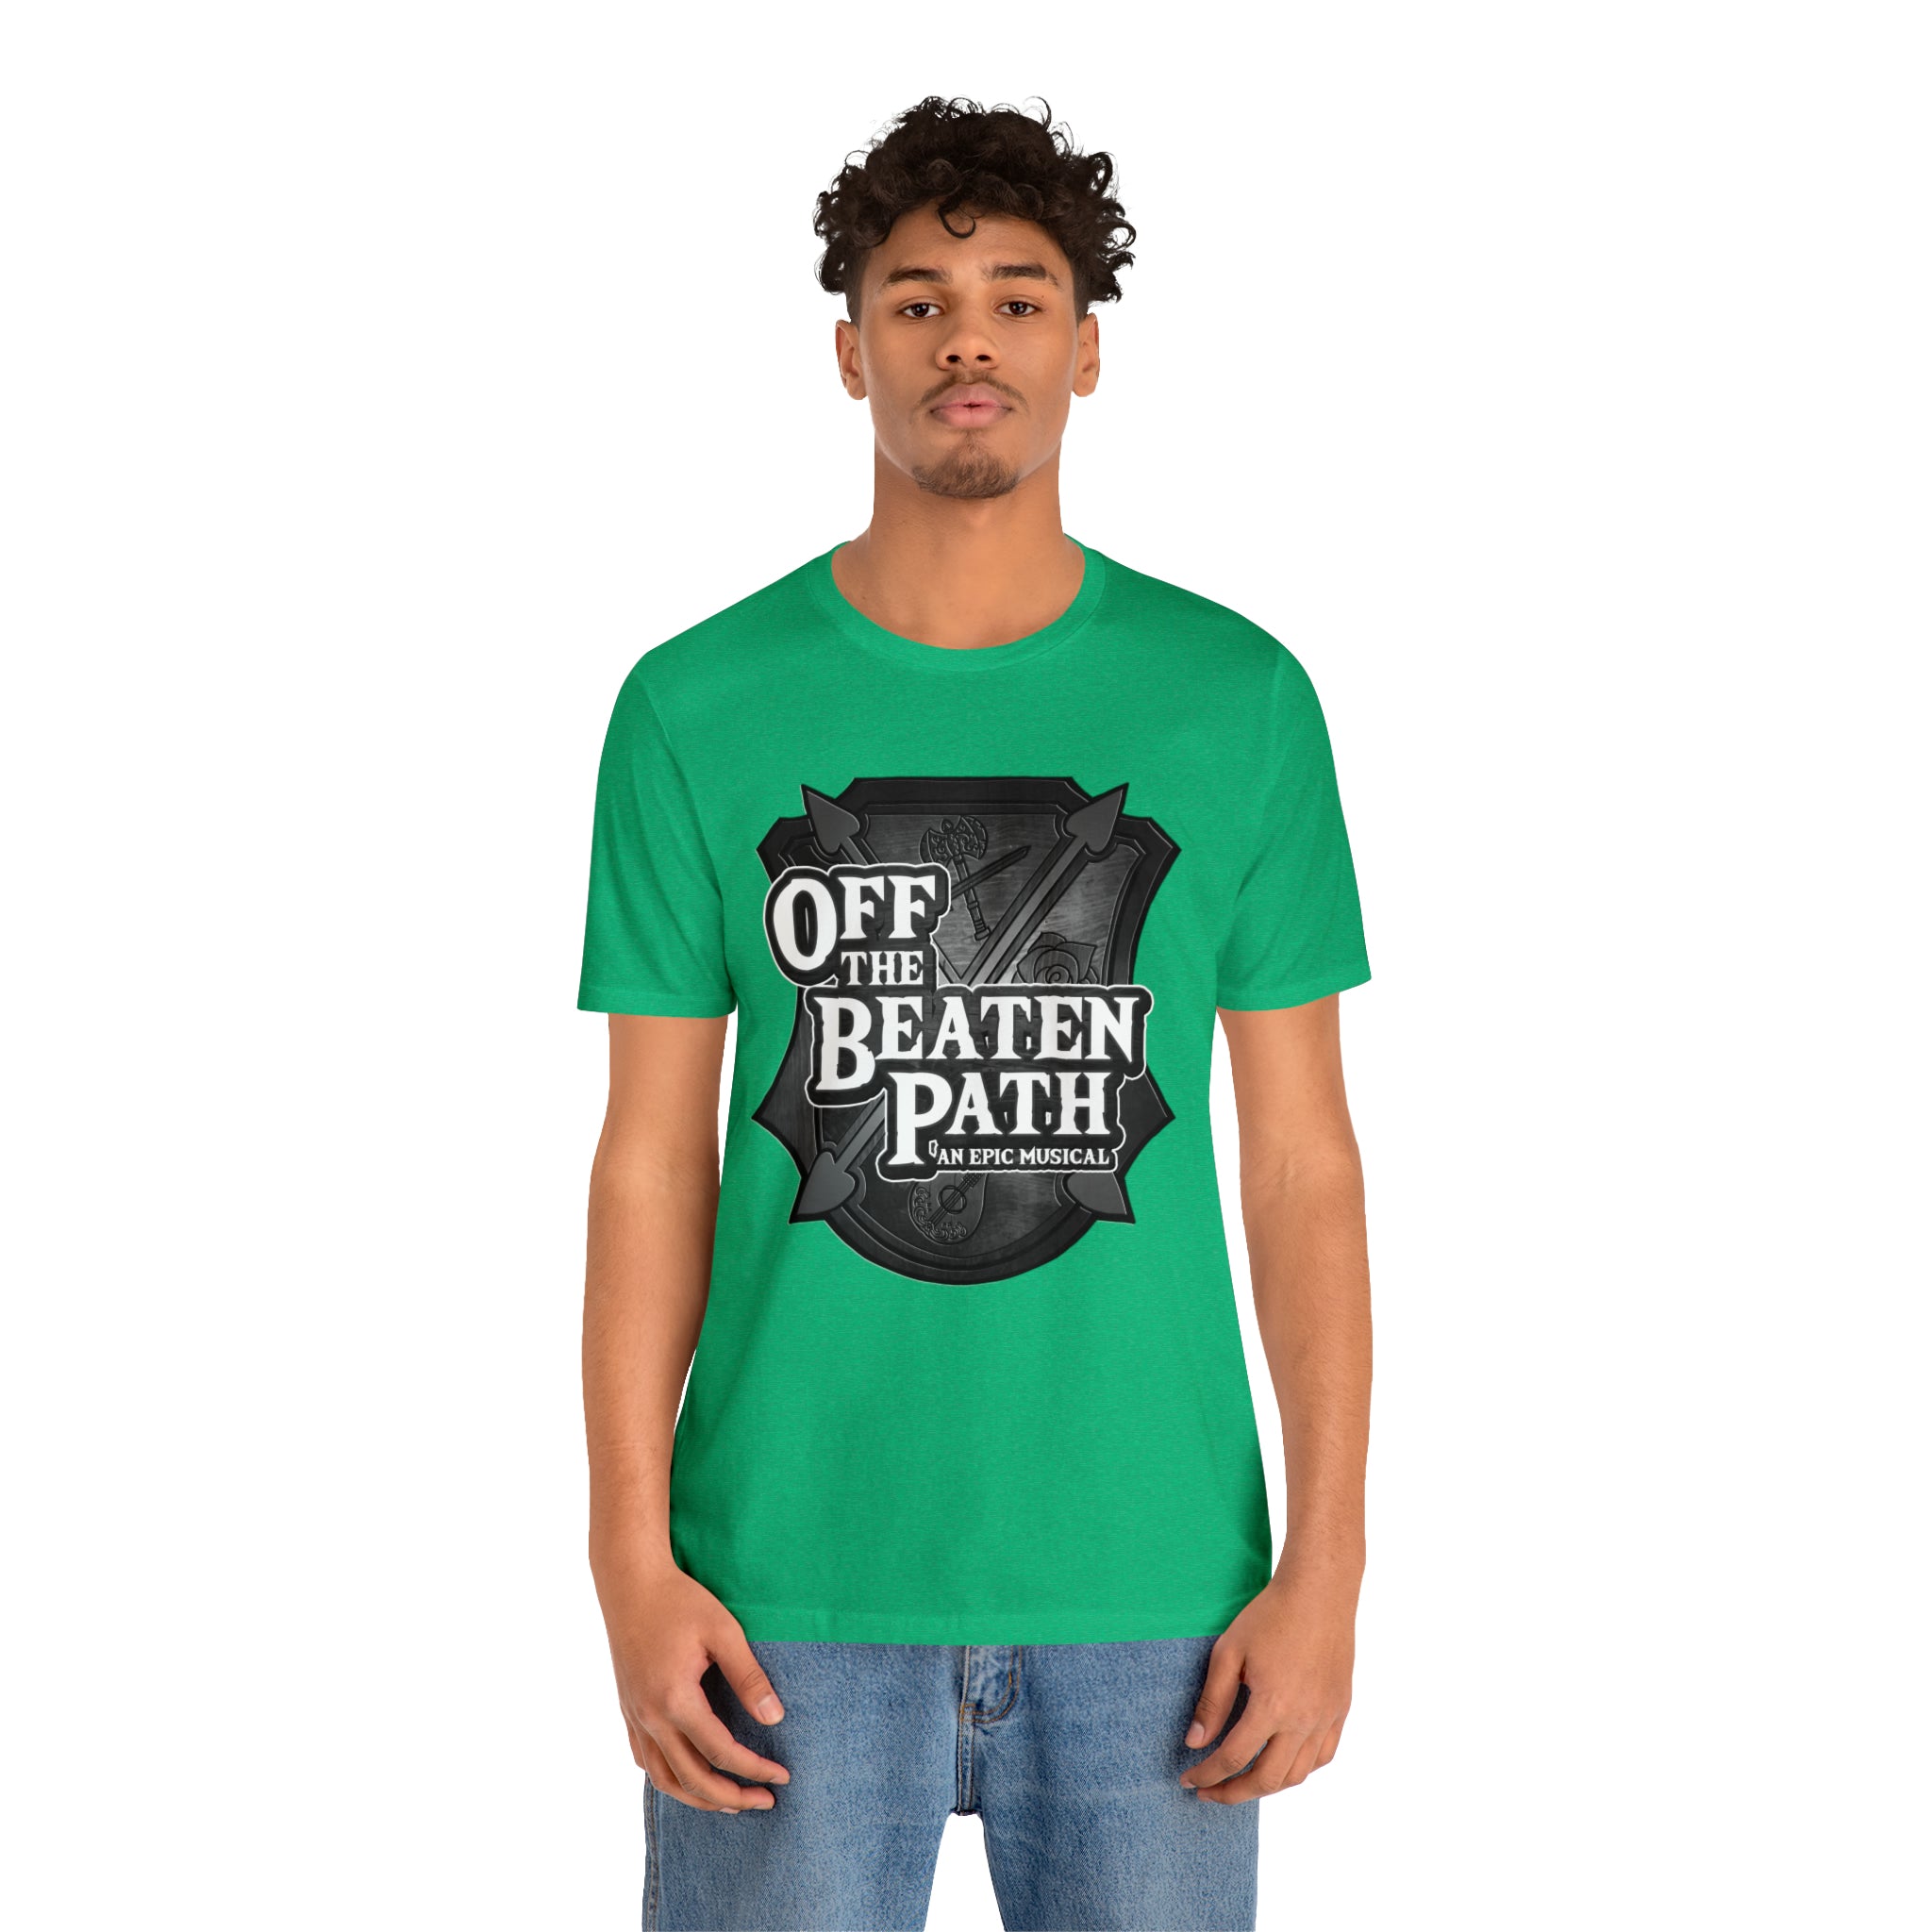 Monochrome OBP Crest Jersey Crewneck T-shirt